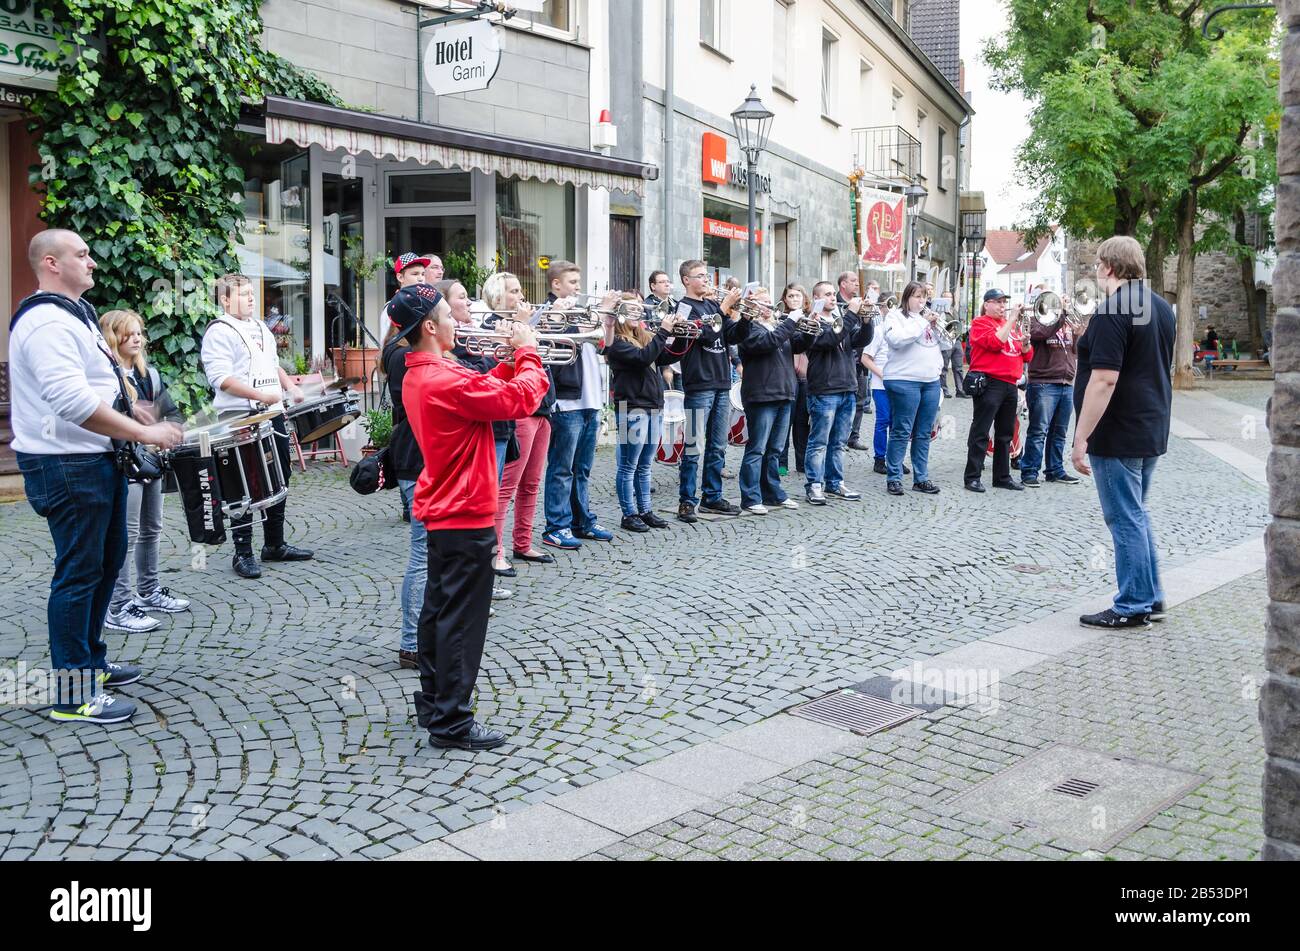 Città vecchia di Hattingen, Nrw, Germania - 10 ottobre 2014: Membri di una cappella banda di marching per aprire un ristorante nella città vecchia di Hattingen. In Vordergur Foto Stock